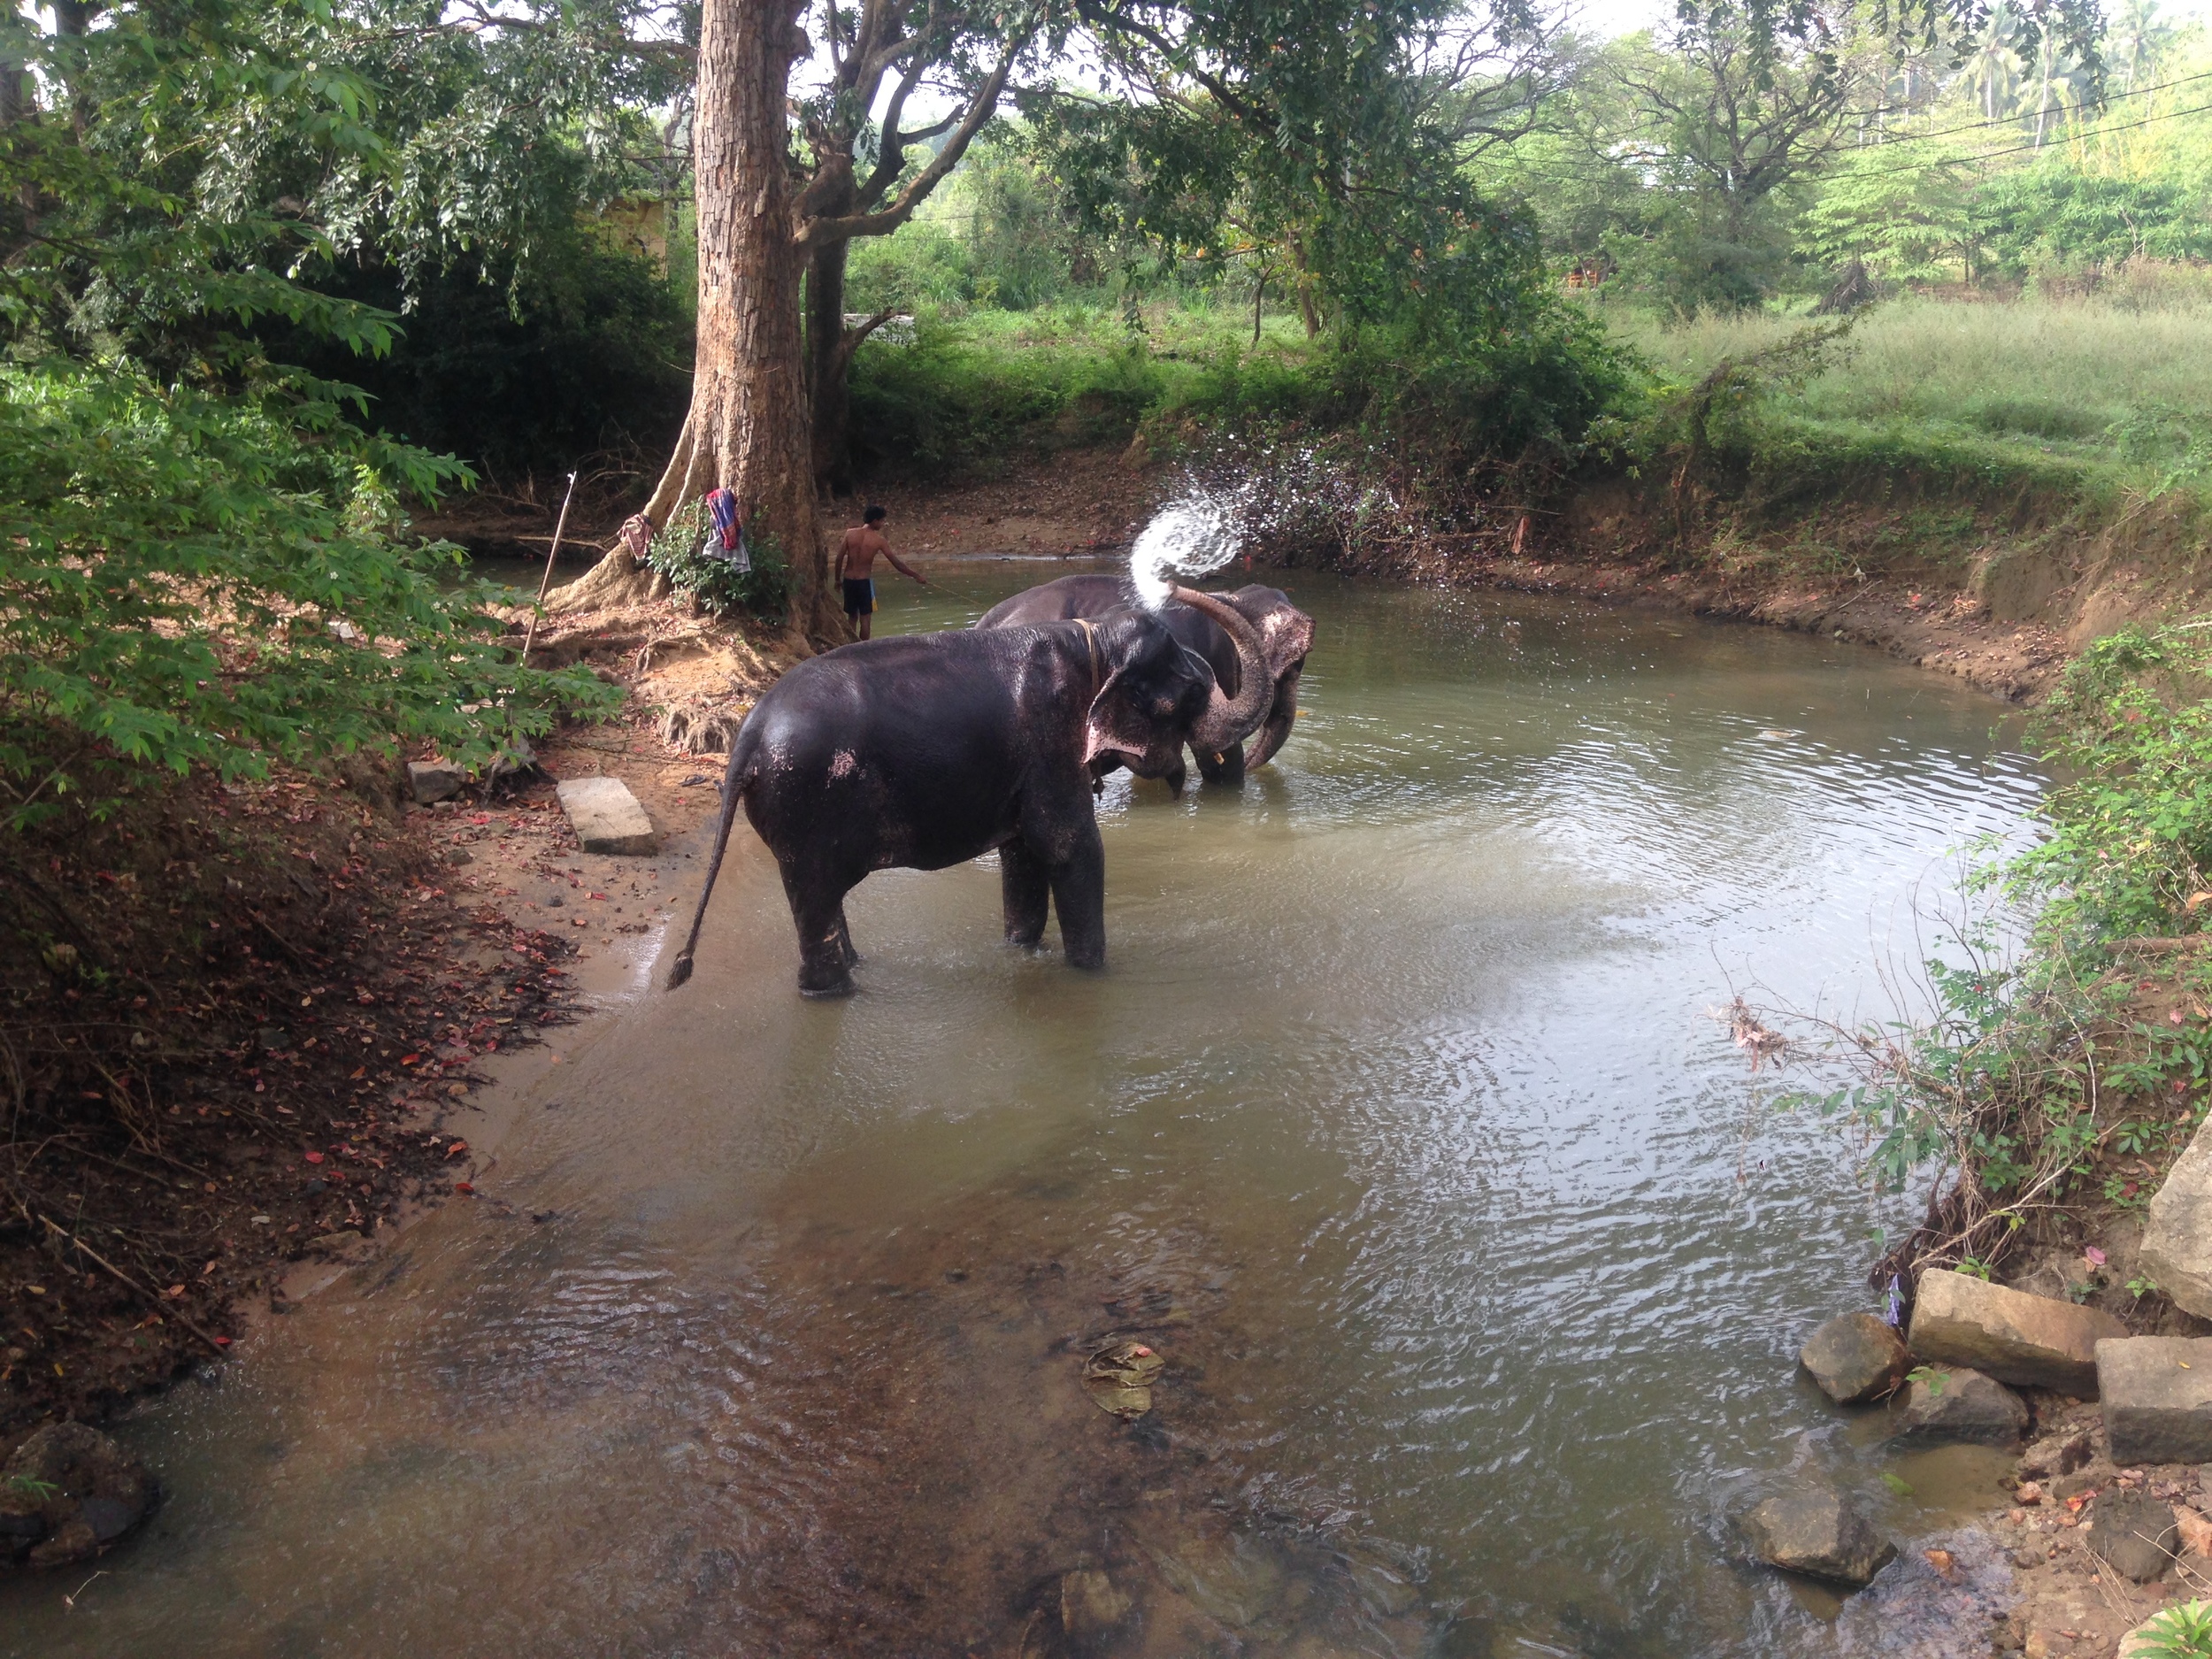  Elephants bathing in a stream. 